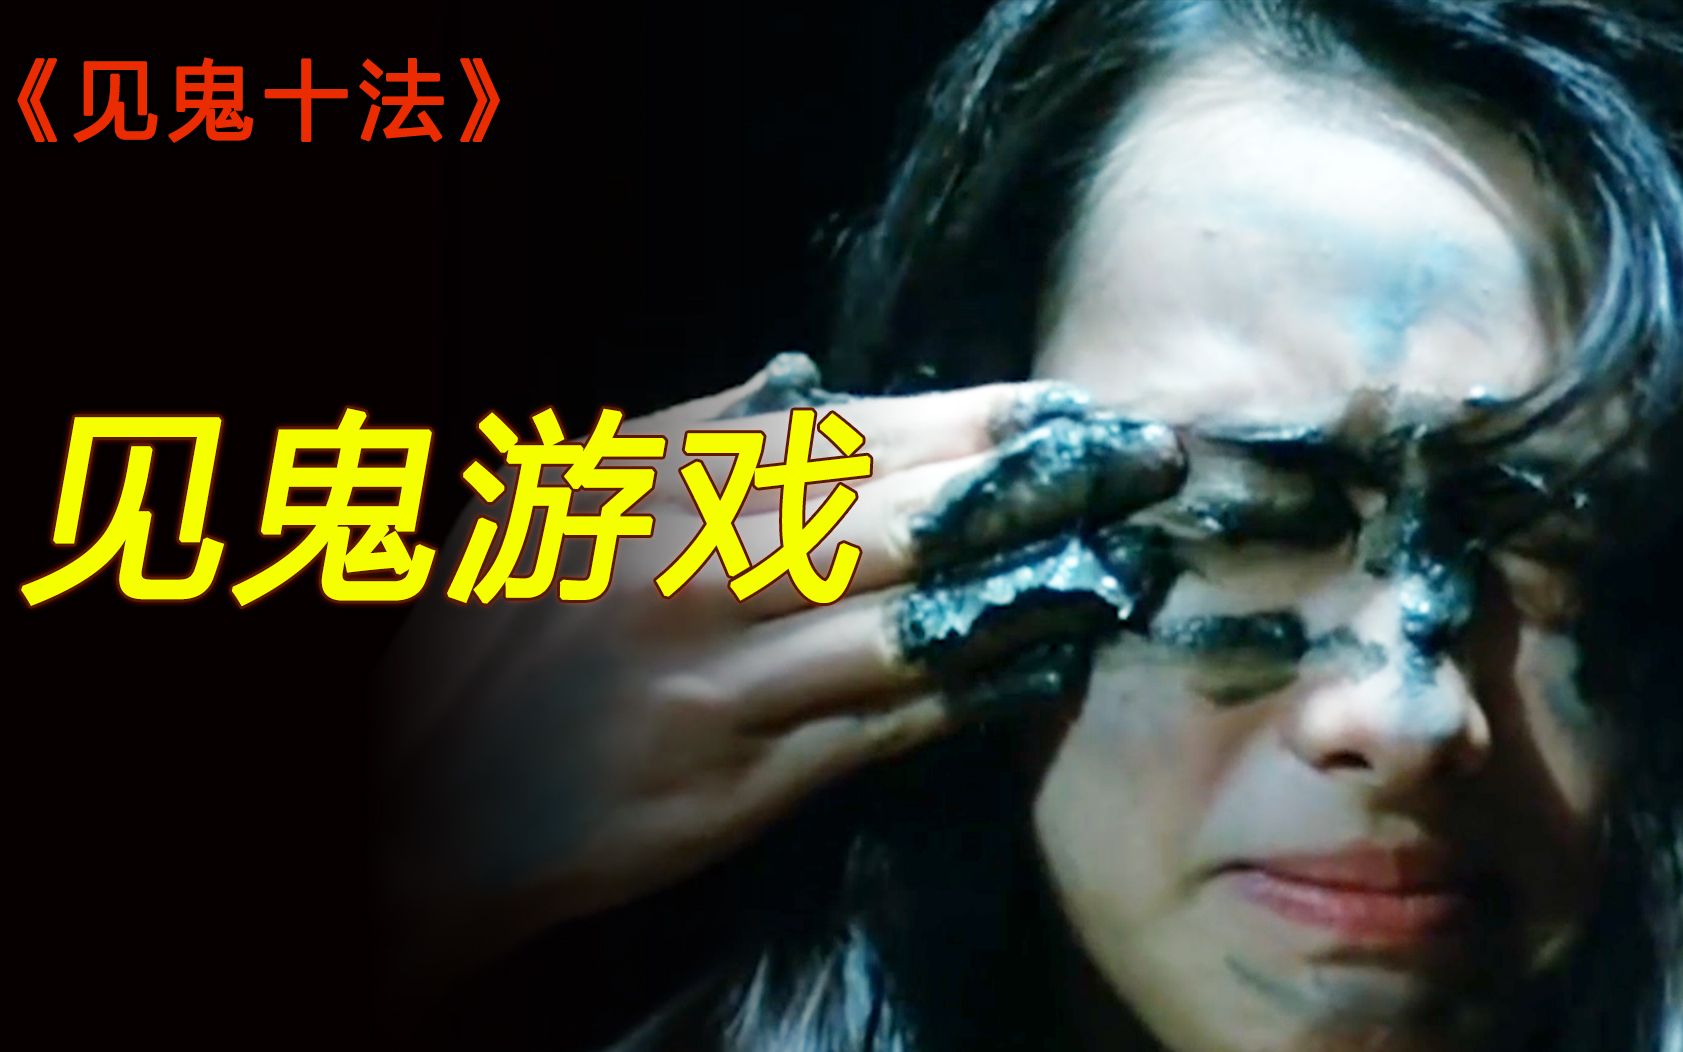 女孩为见鬼，把尸泥涂眼上，结果差点丢了小命！香港经典电影